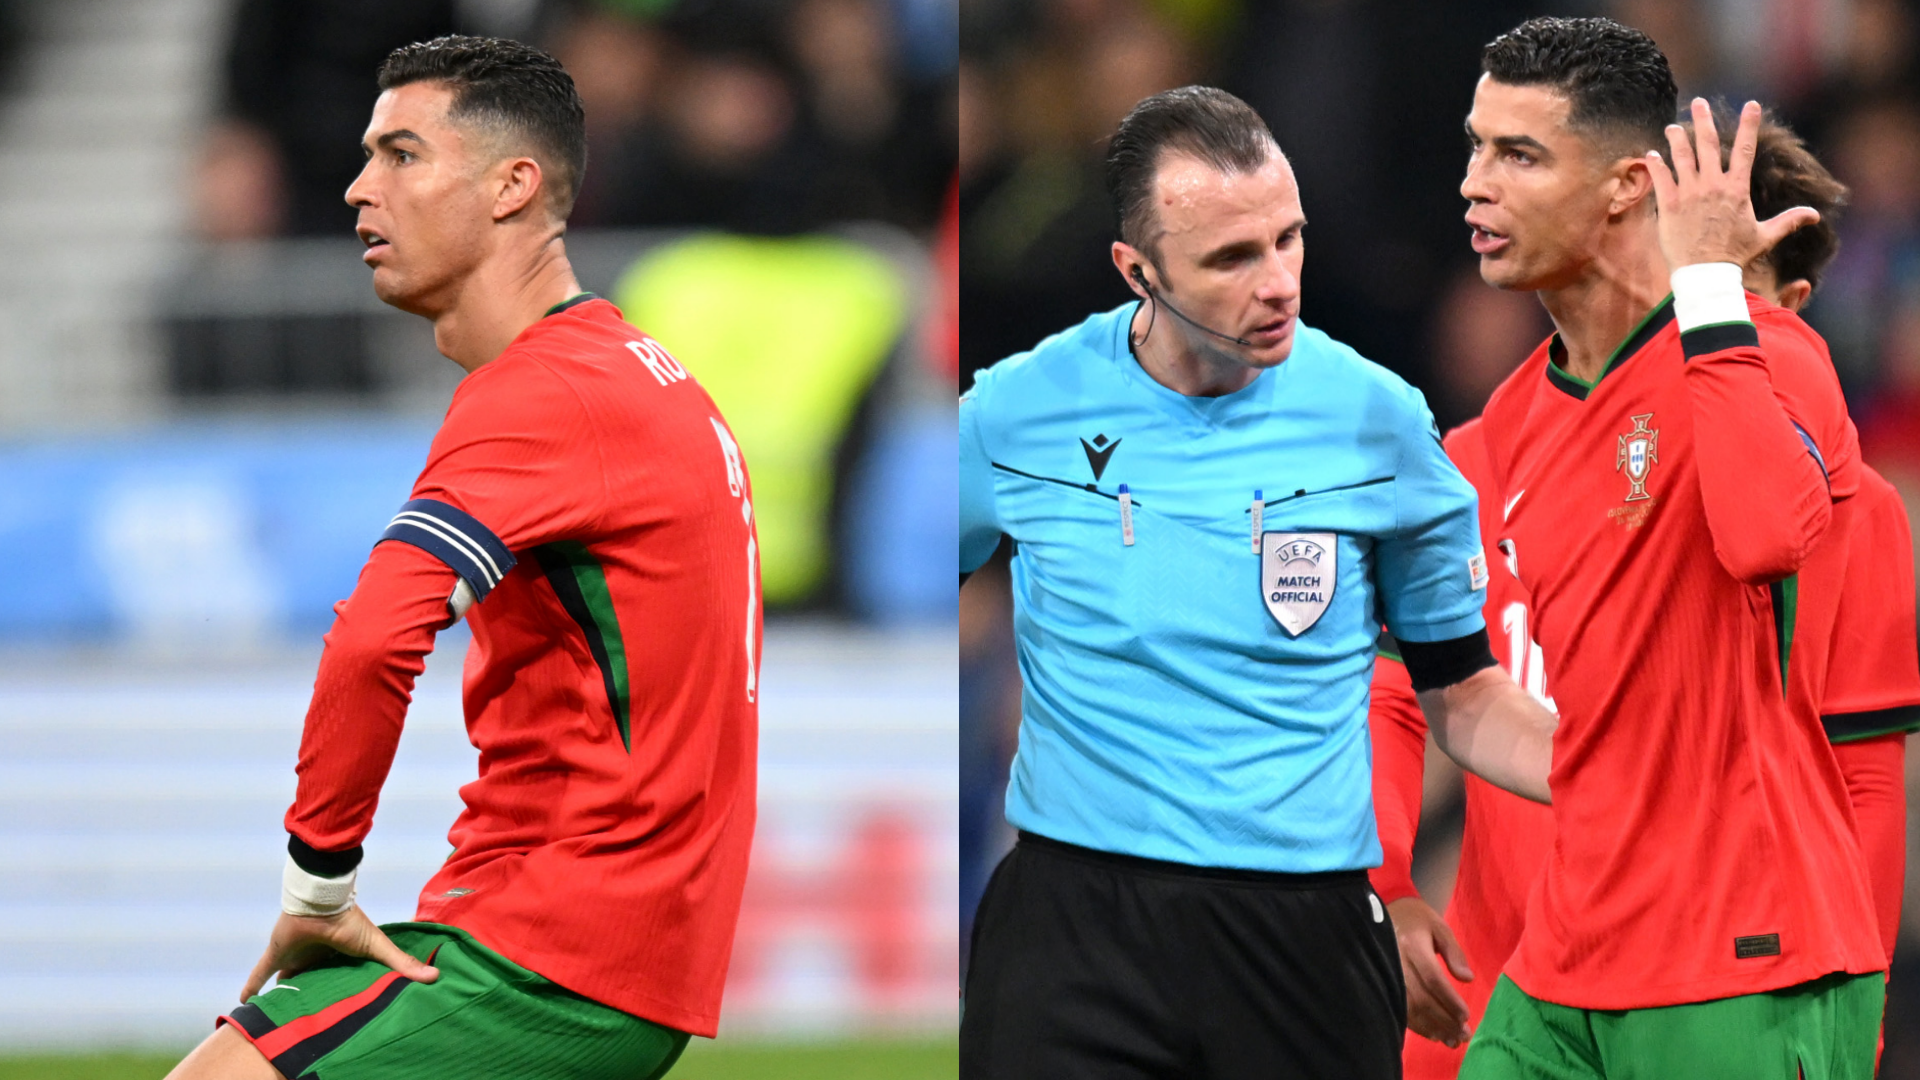 "Kein Elfer, keine Party!" Fans lästern über Cristiano Ronaldo nach Portugals Niederlage gegen Slowenien